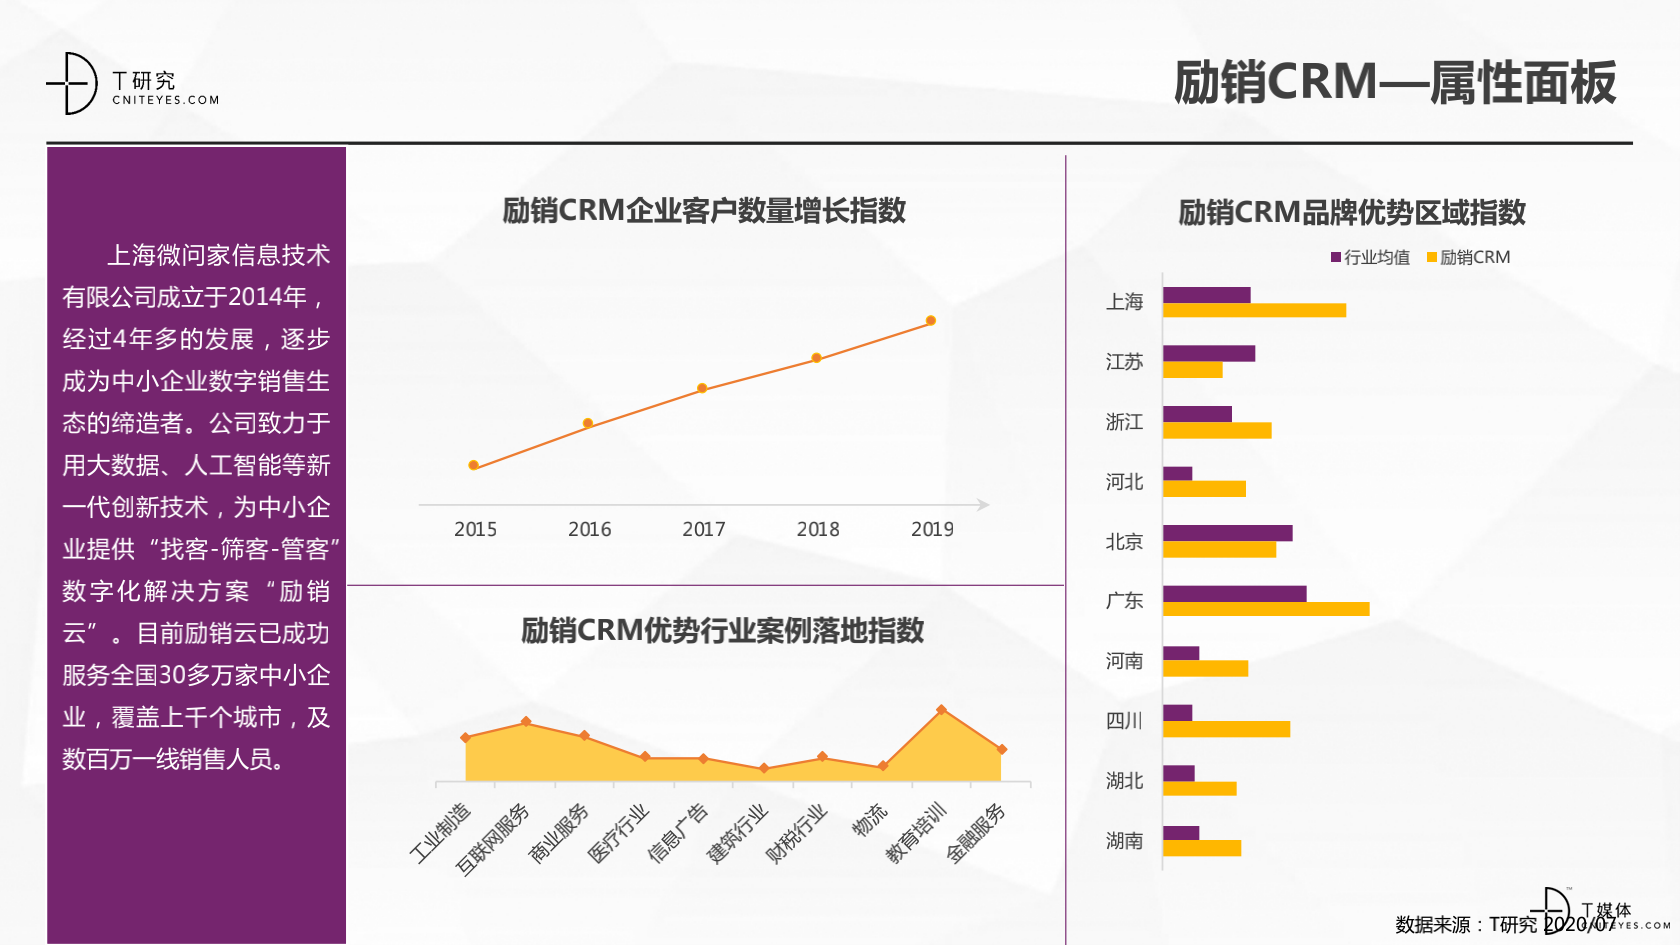 2_2020中国CRM指数测评报告v1.5_33.png